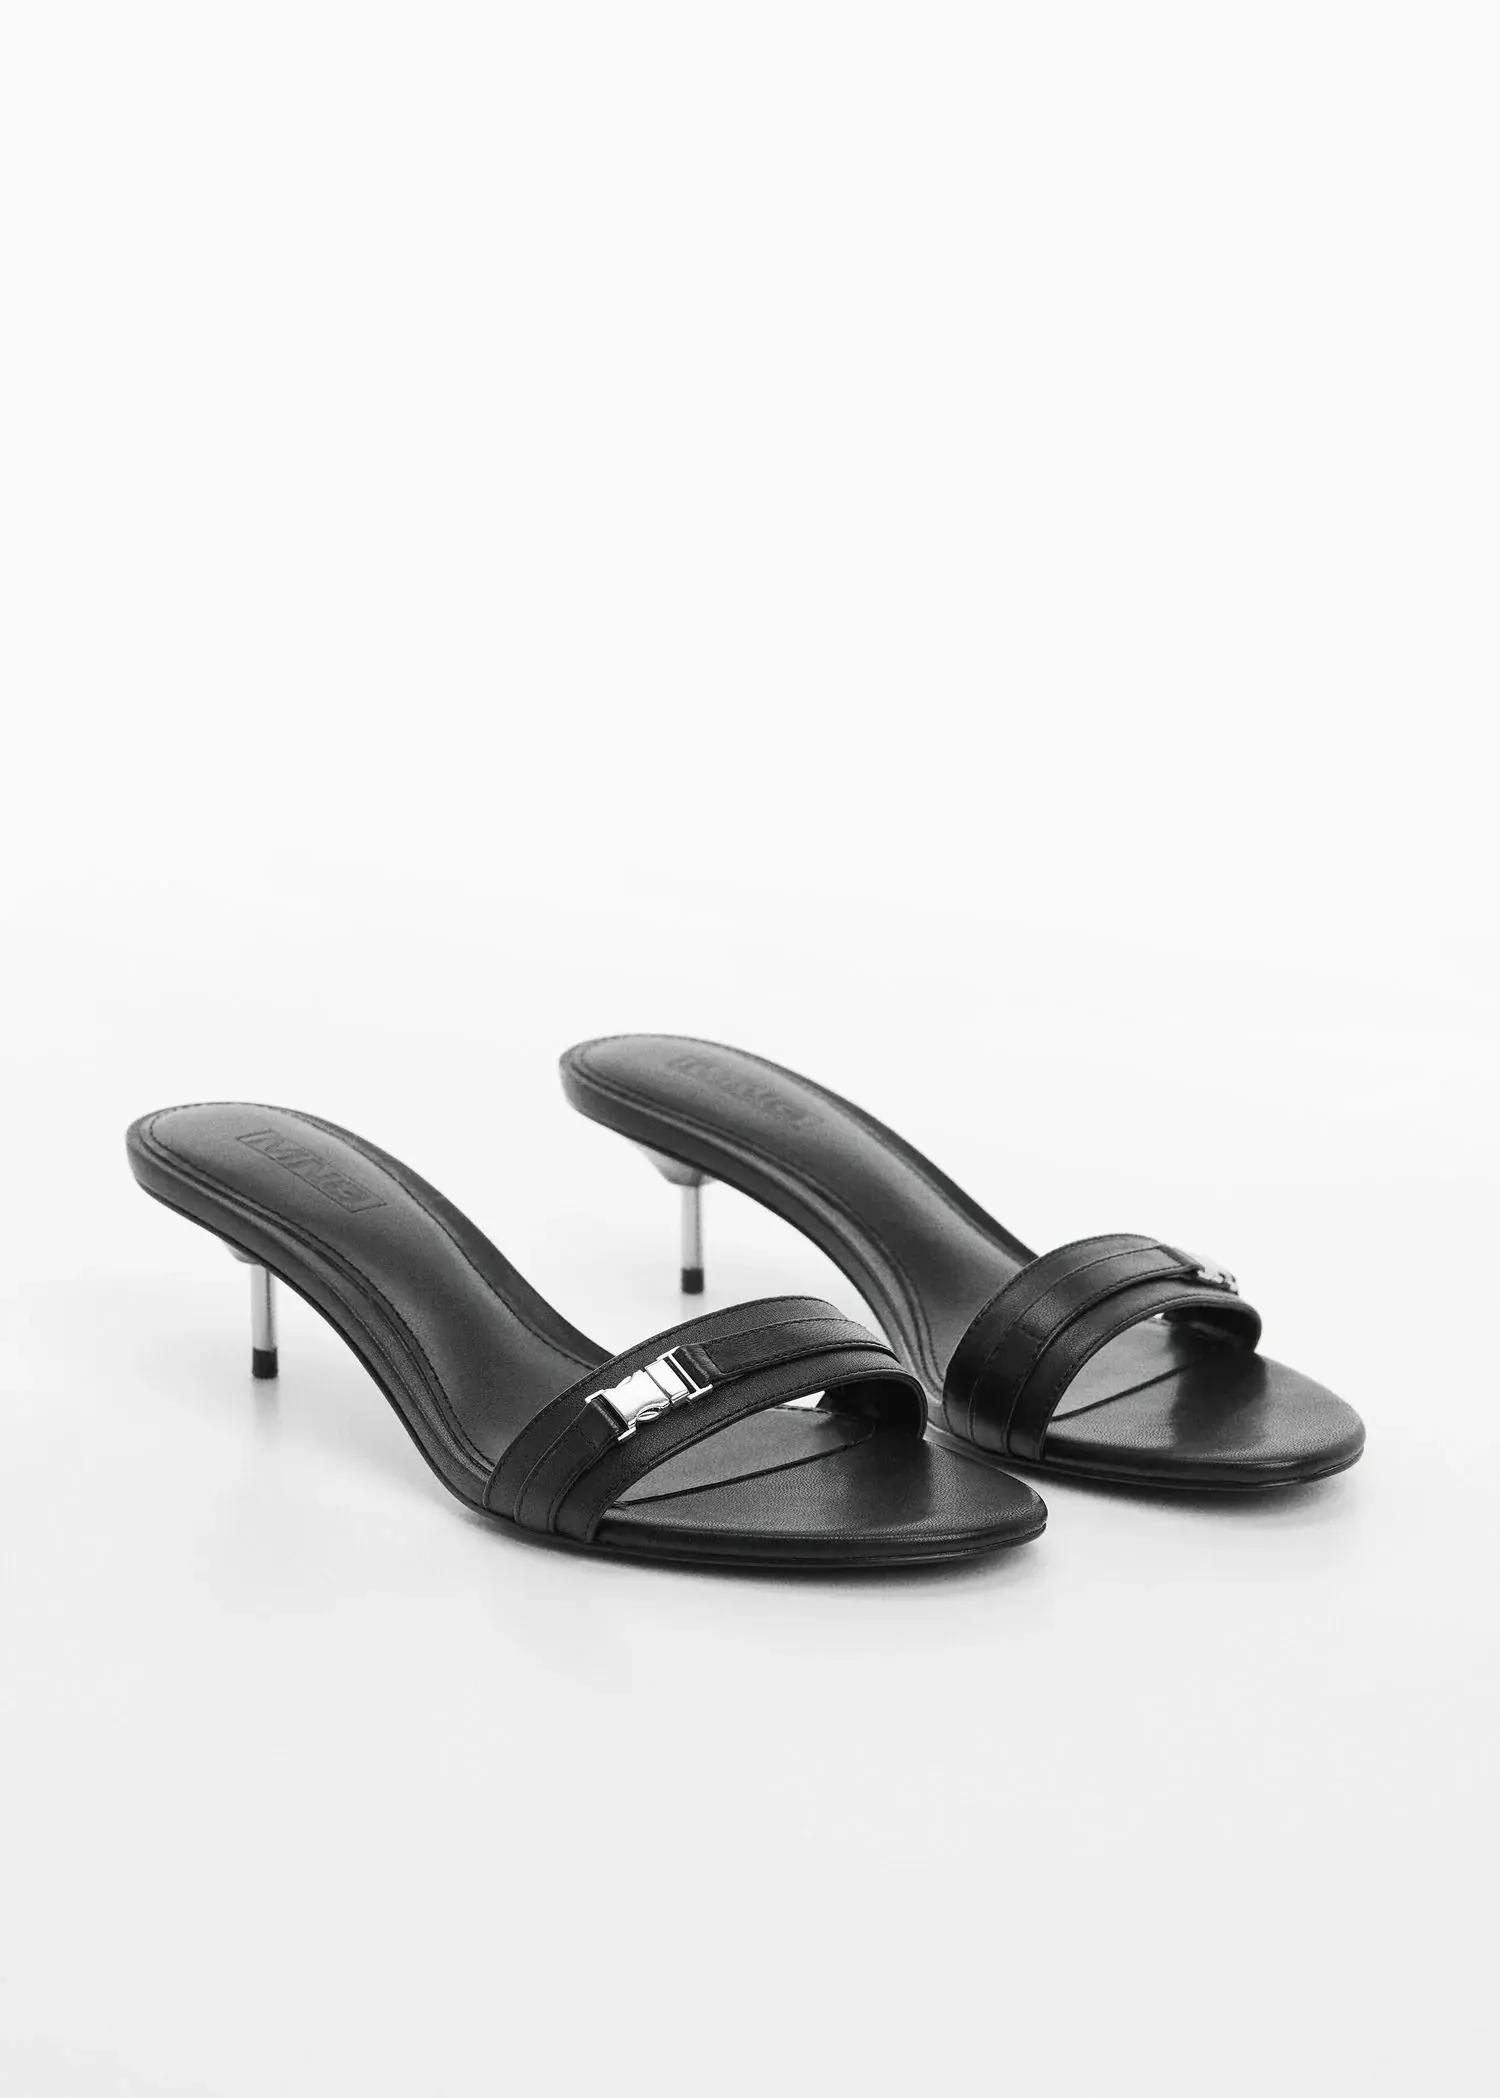 Mango Leather sandals with metallic heel. 3